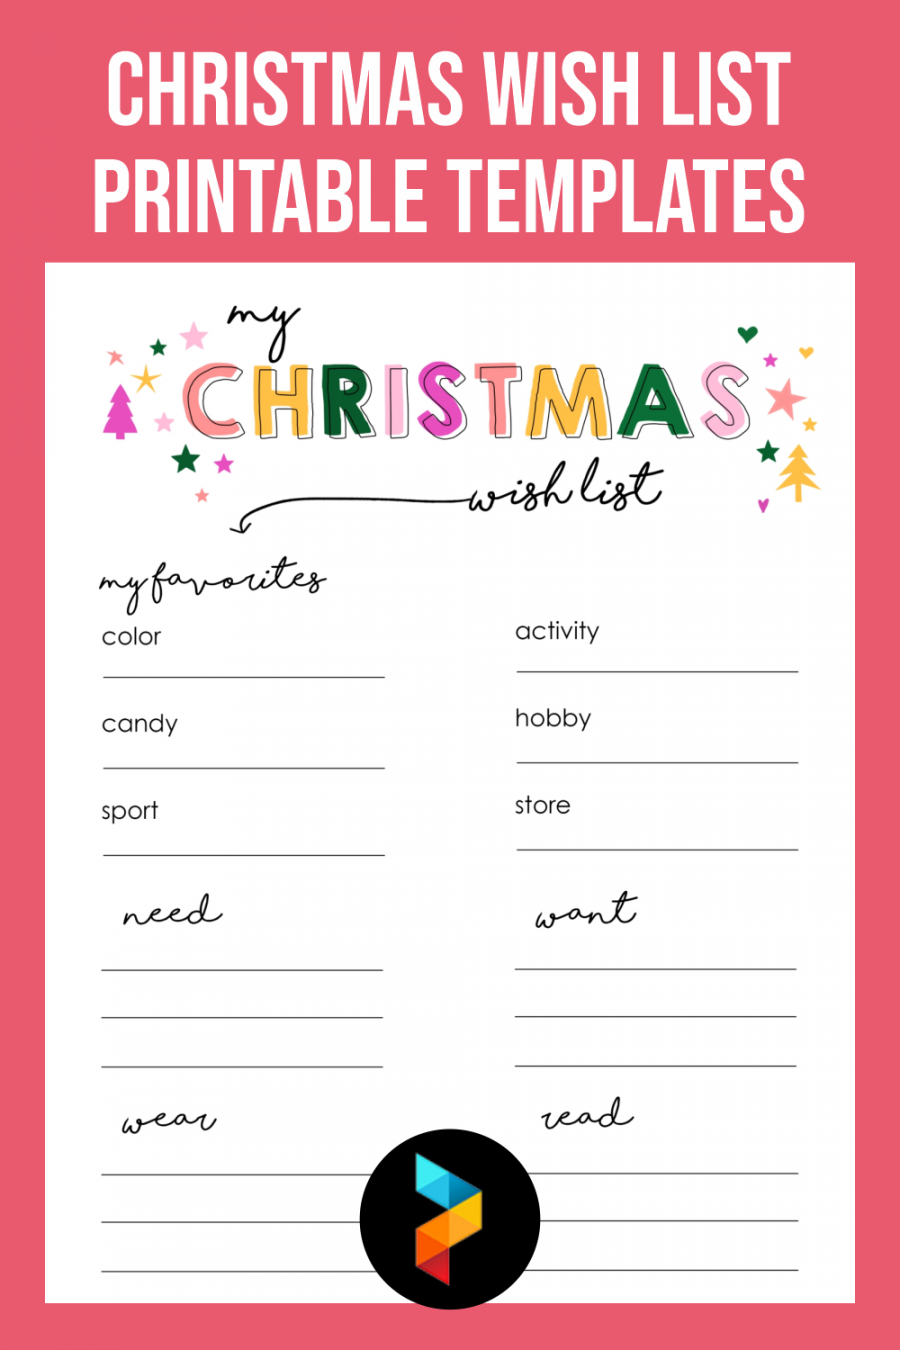 Christmas List Template Free Printable - Printable -  Best Christmas Wish List Free Printable Templates - printablee